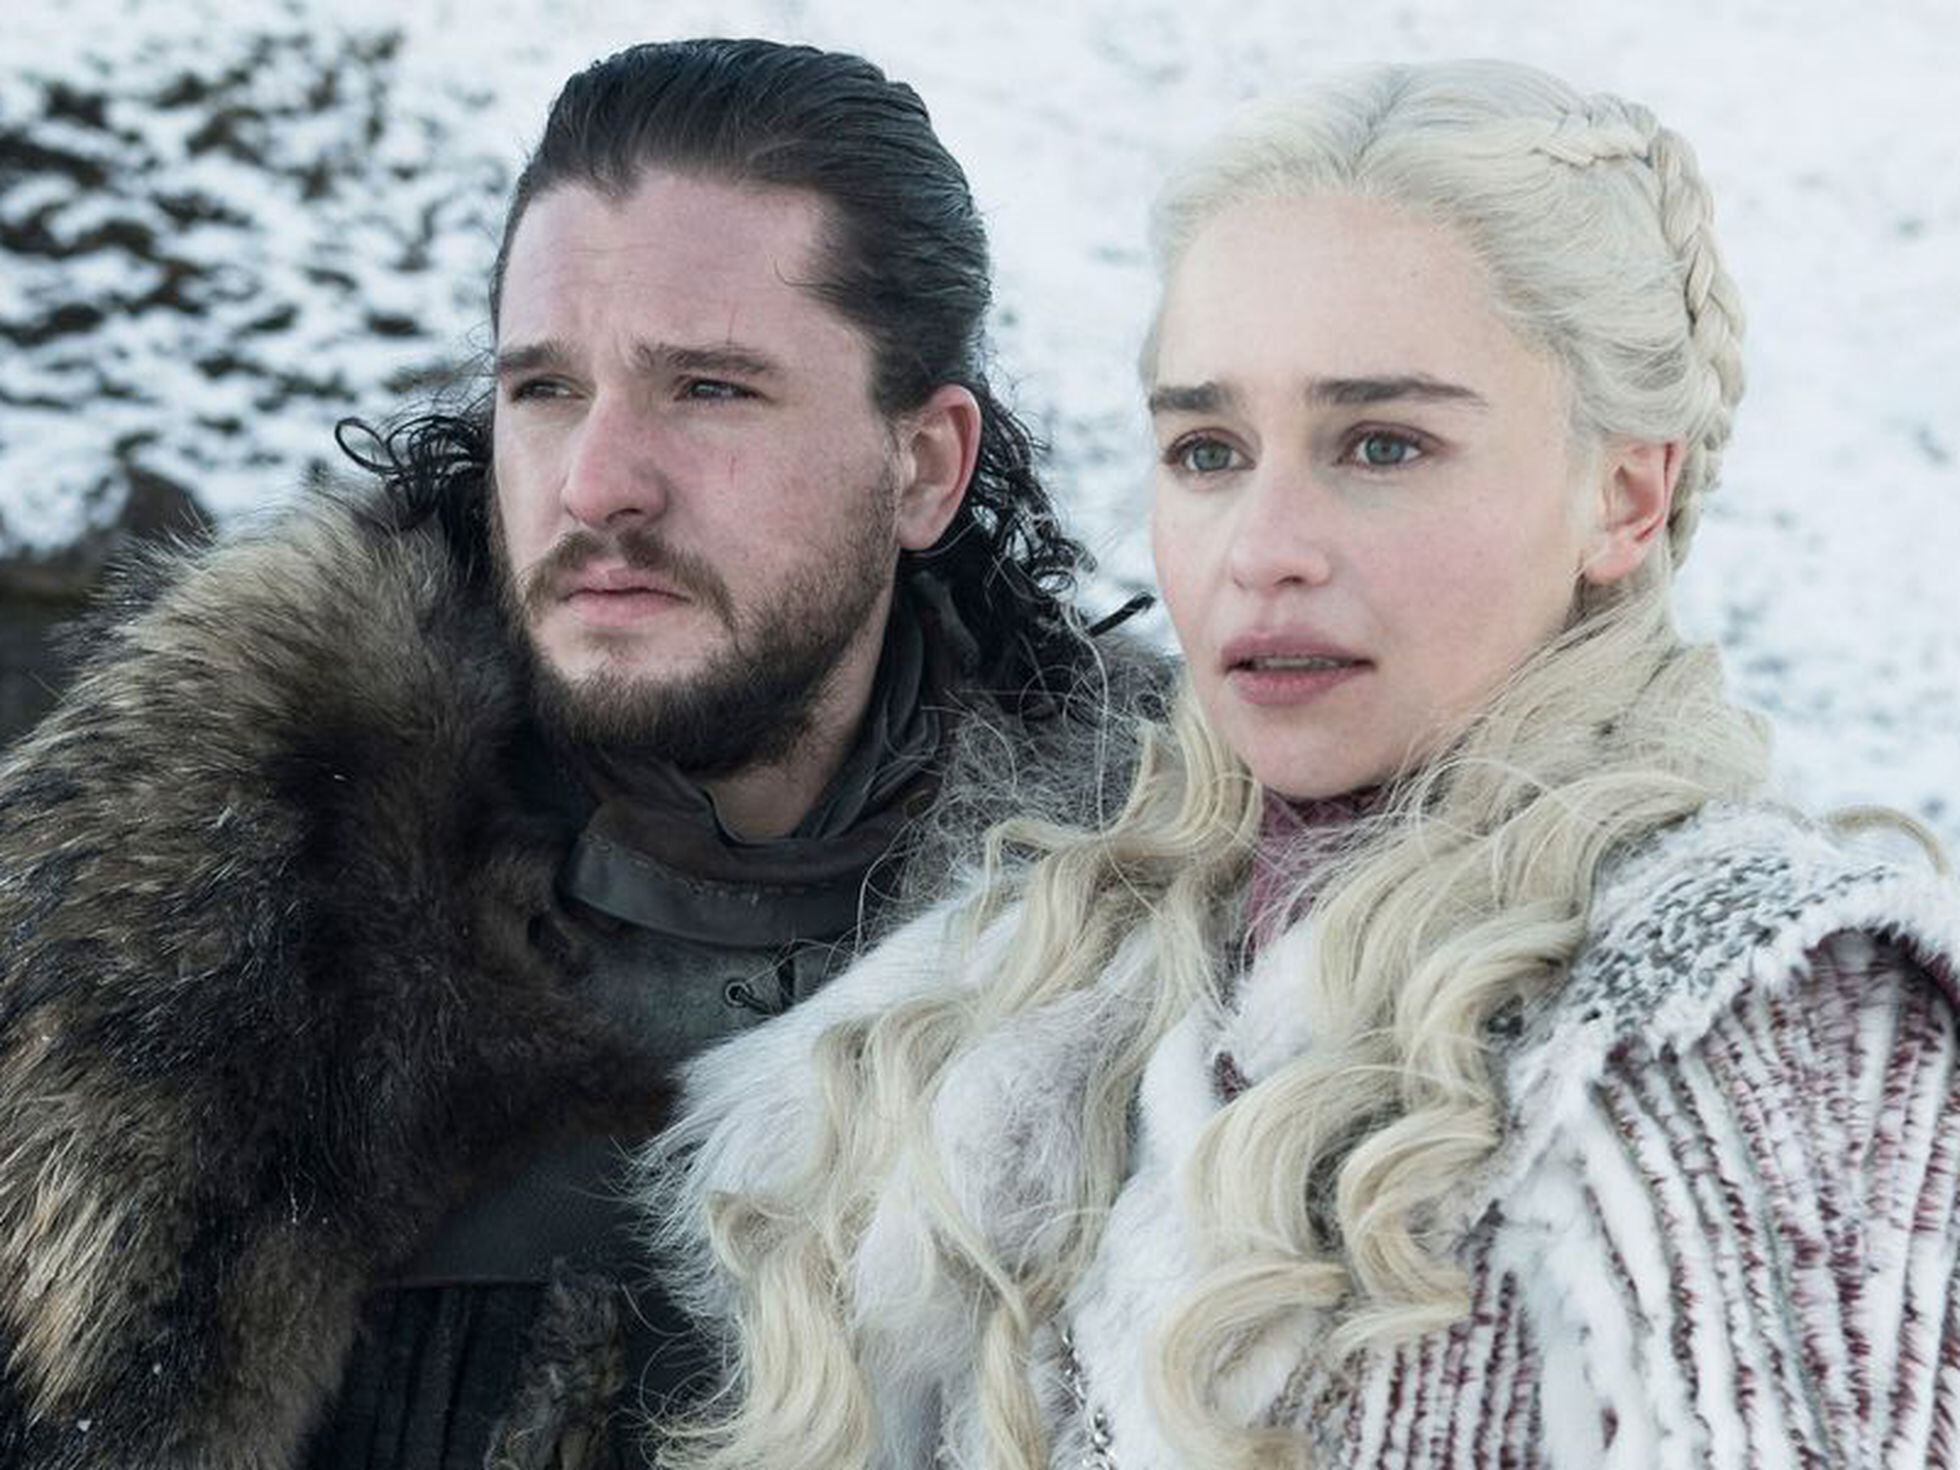 Game of Thrones, Vê as primeiras imagens da oitava temporada